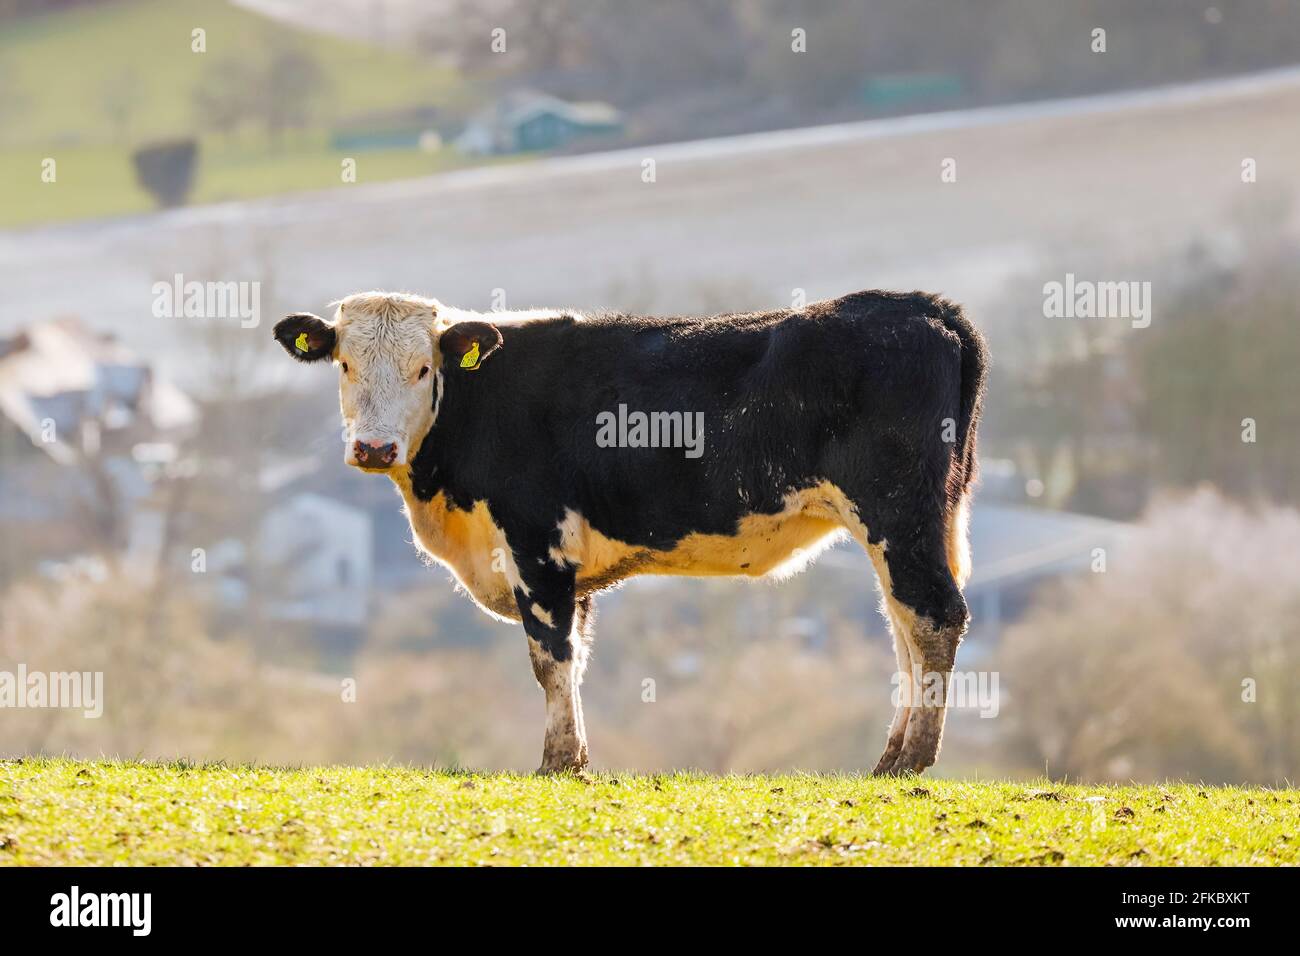 Vache frisonne sur une colline dans les collines Chiltern avec la belle vallée de Stonor au-delà, Pishill, Stonor, Oxfordshire, Angleterre, Royaume-Uni, Europe Banque D'Images